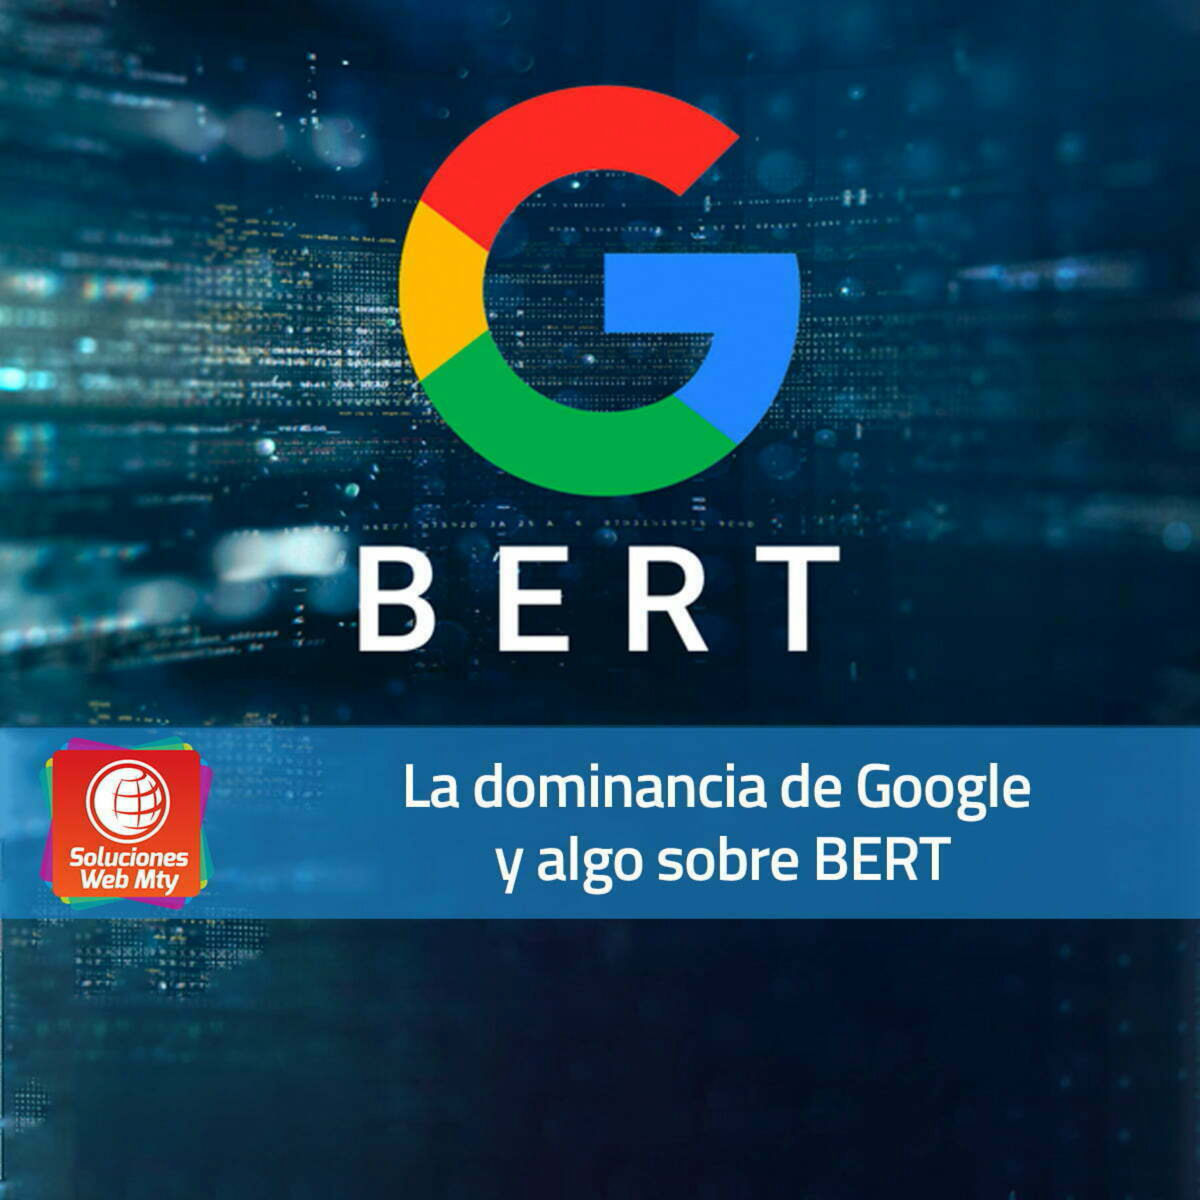 La dominancia de Google y algo sobre BERT